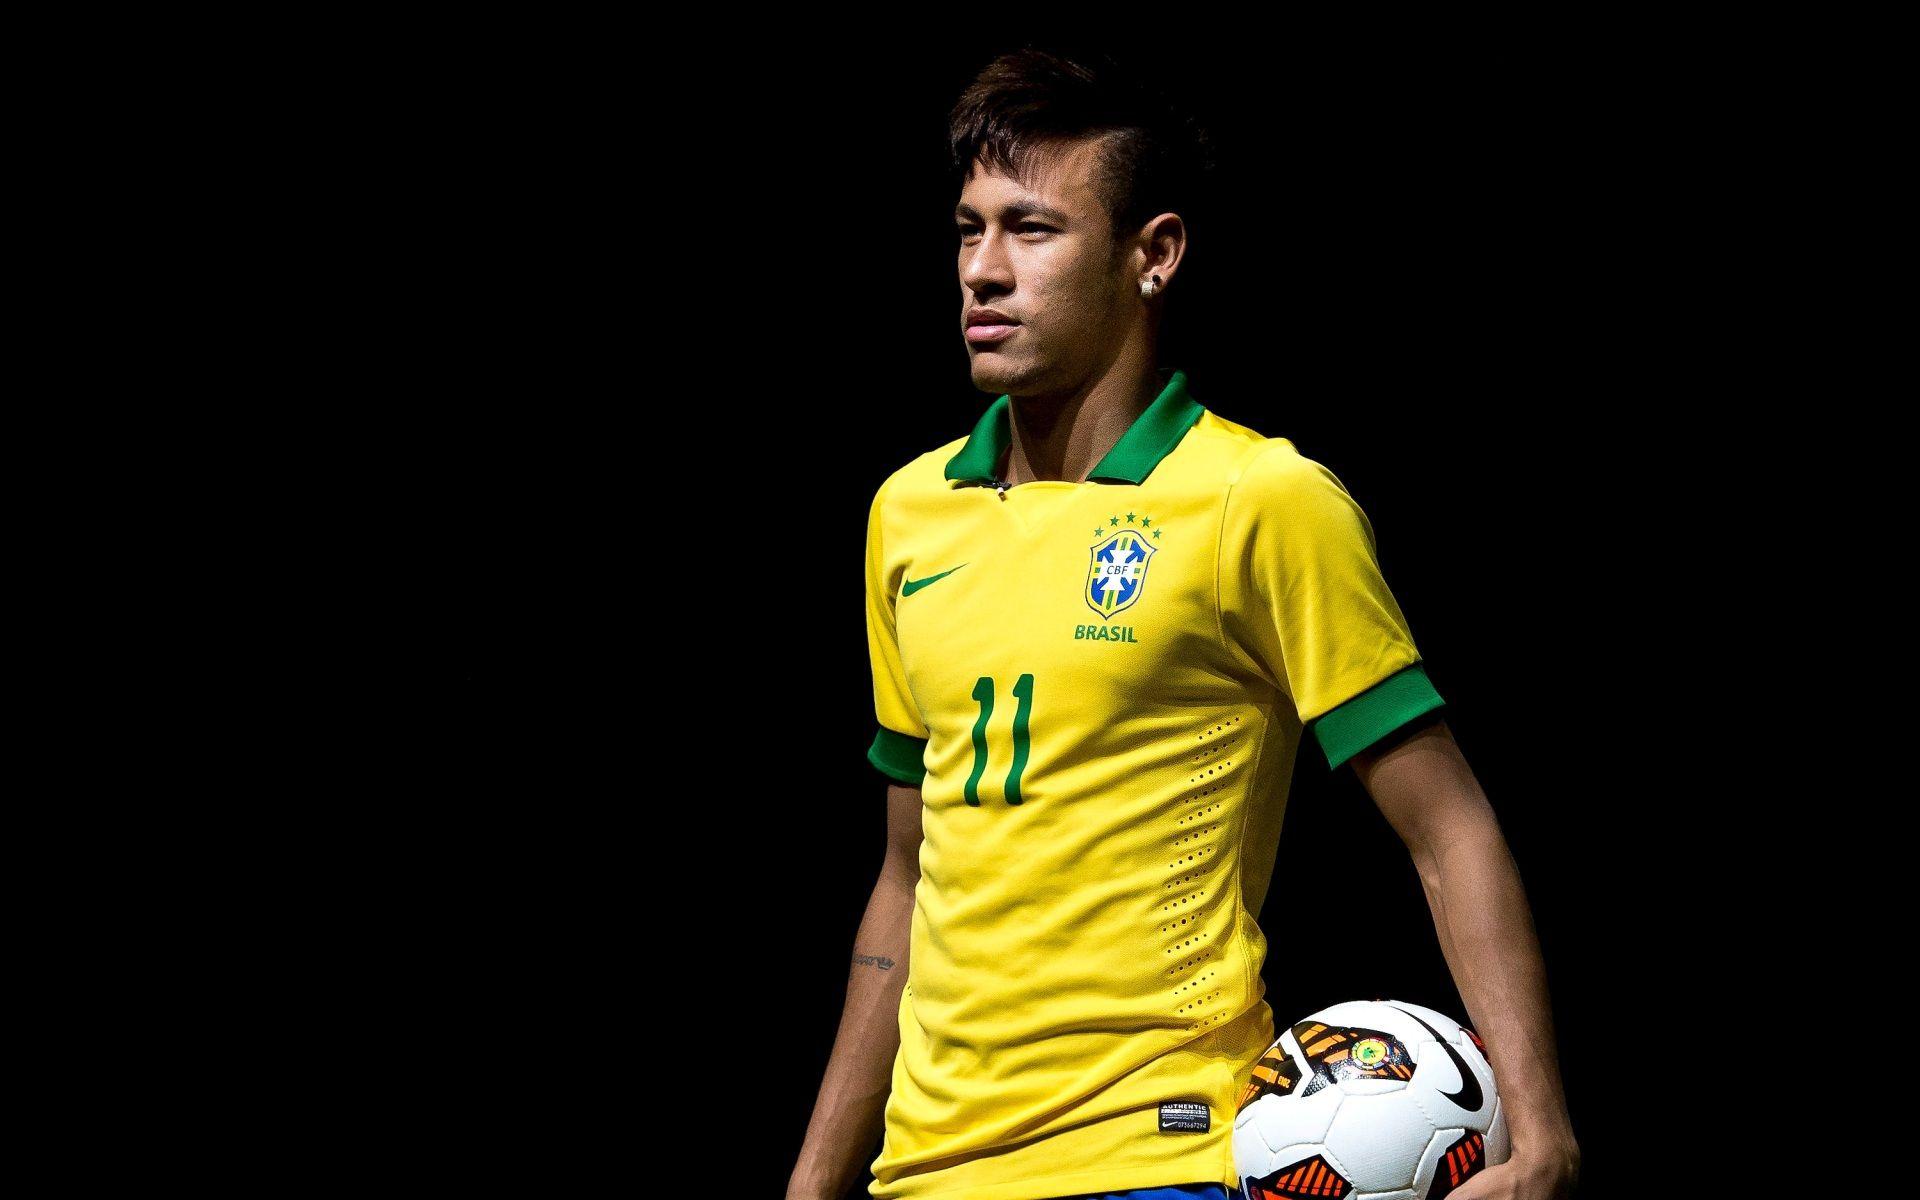 Bạn là fan của Neymar? Đừng bỏ lỡ bức ảnh này! Hình nền đẹp lung linh với hình ảnh thần tượng của bạn sẽ làm cho màn hình điện thoại của bạn trở nên rực rỡ hơn bao giờ hết.